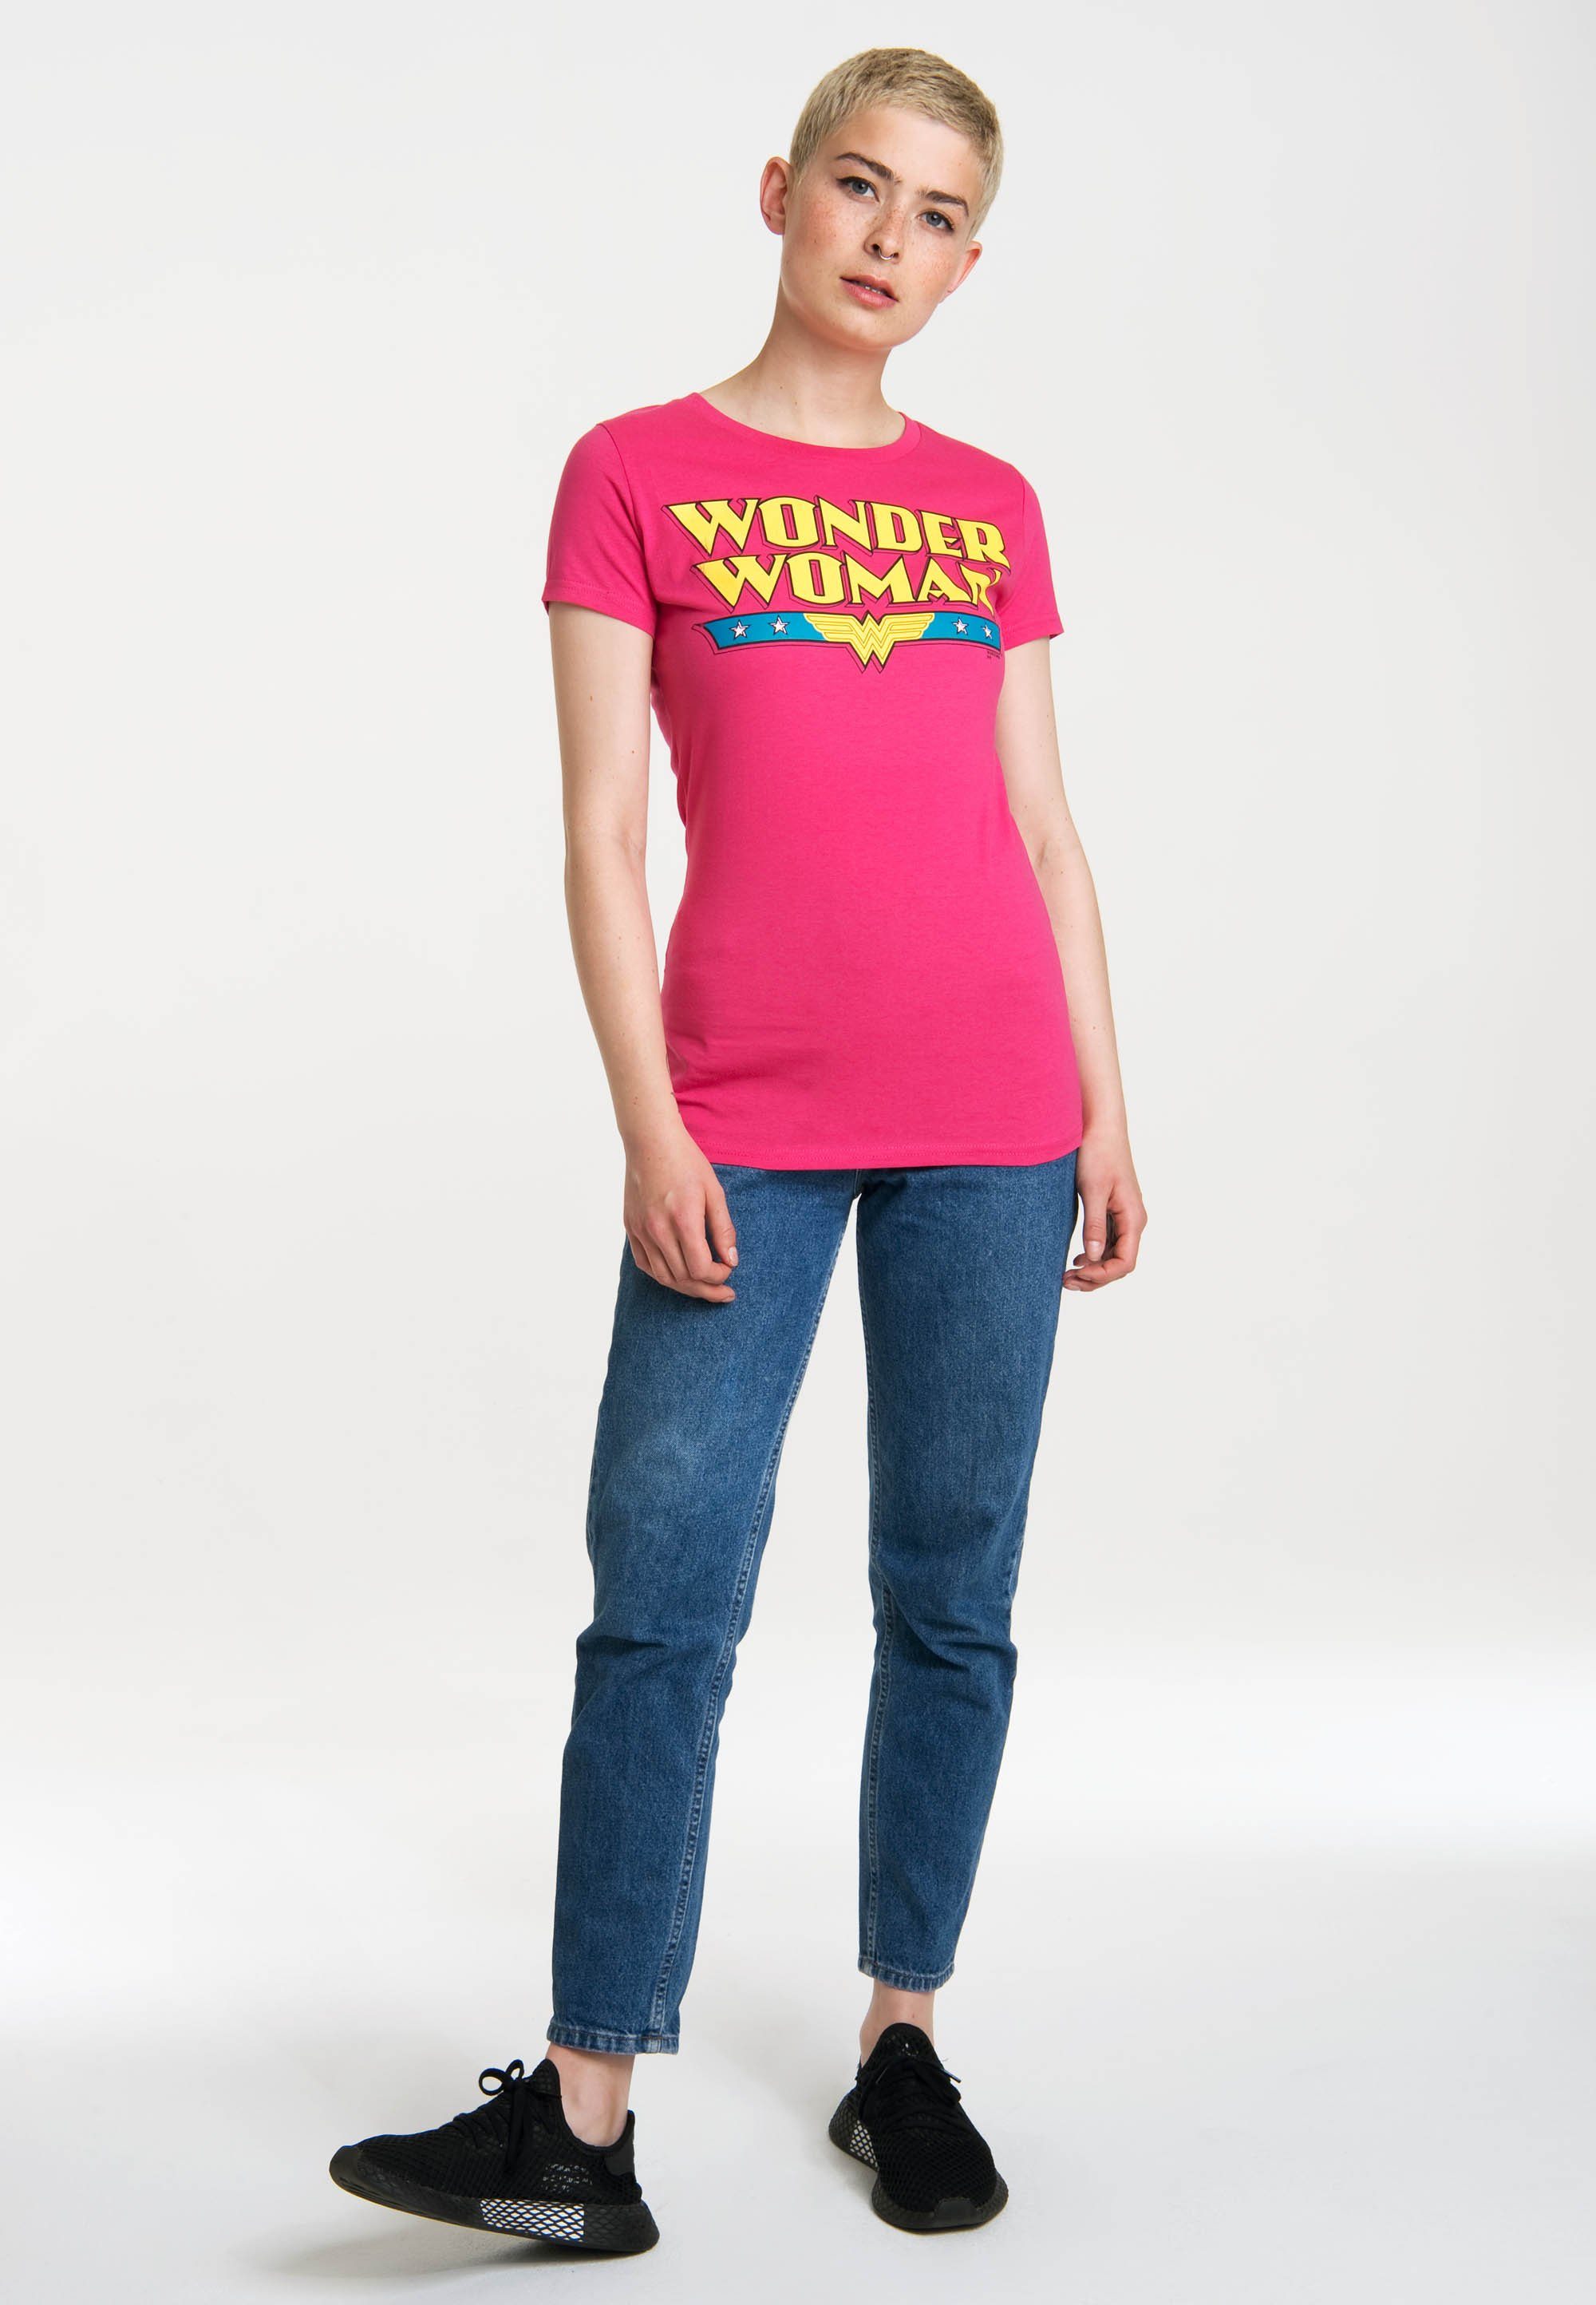 LOGOSHIRT T-Shirt coolem - Frontprint Woman Logo Wonder mit